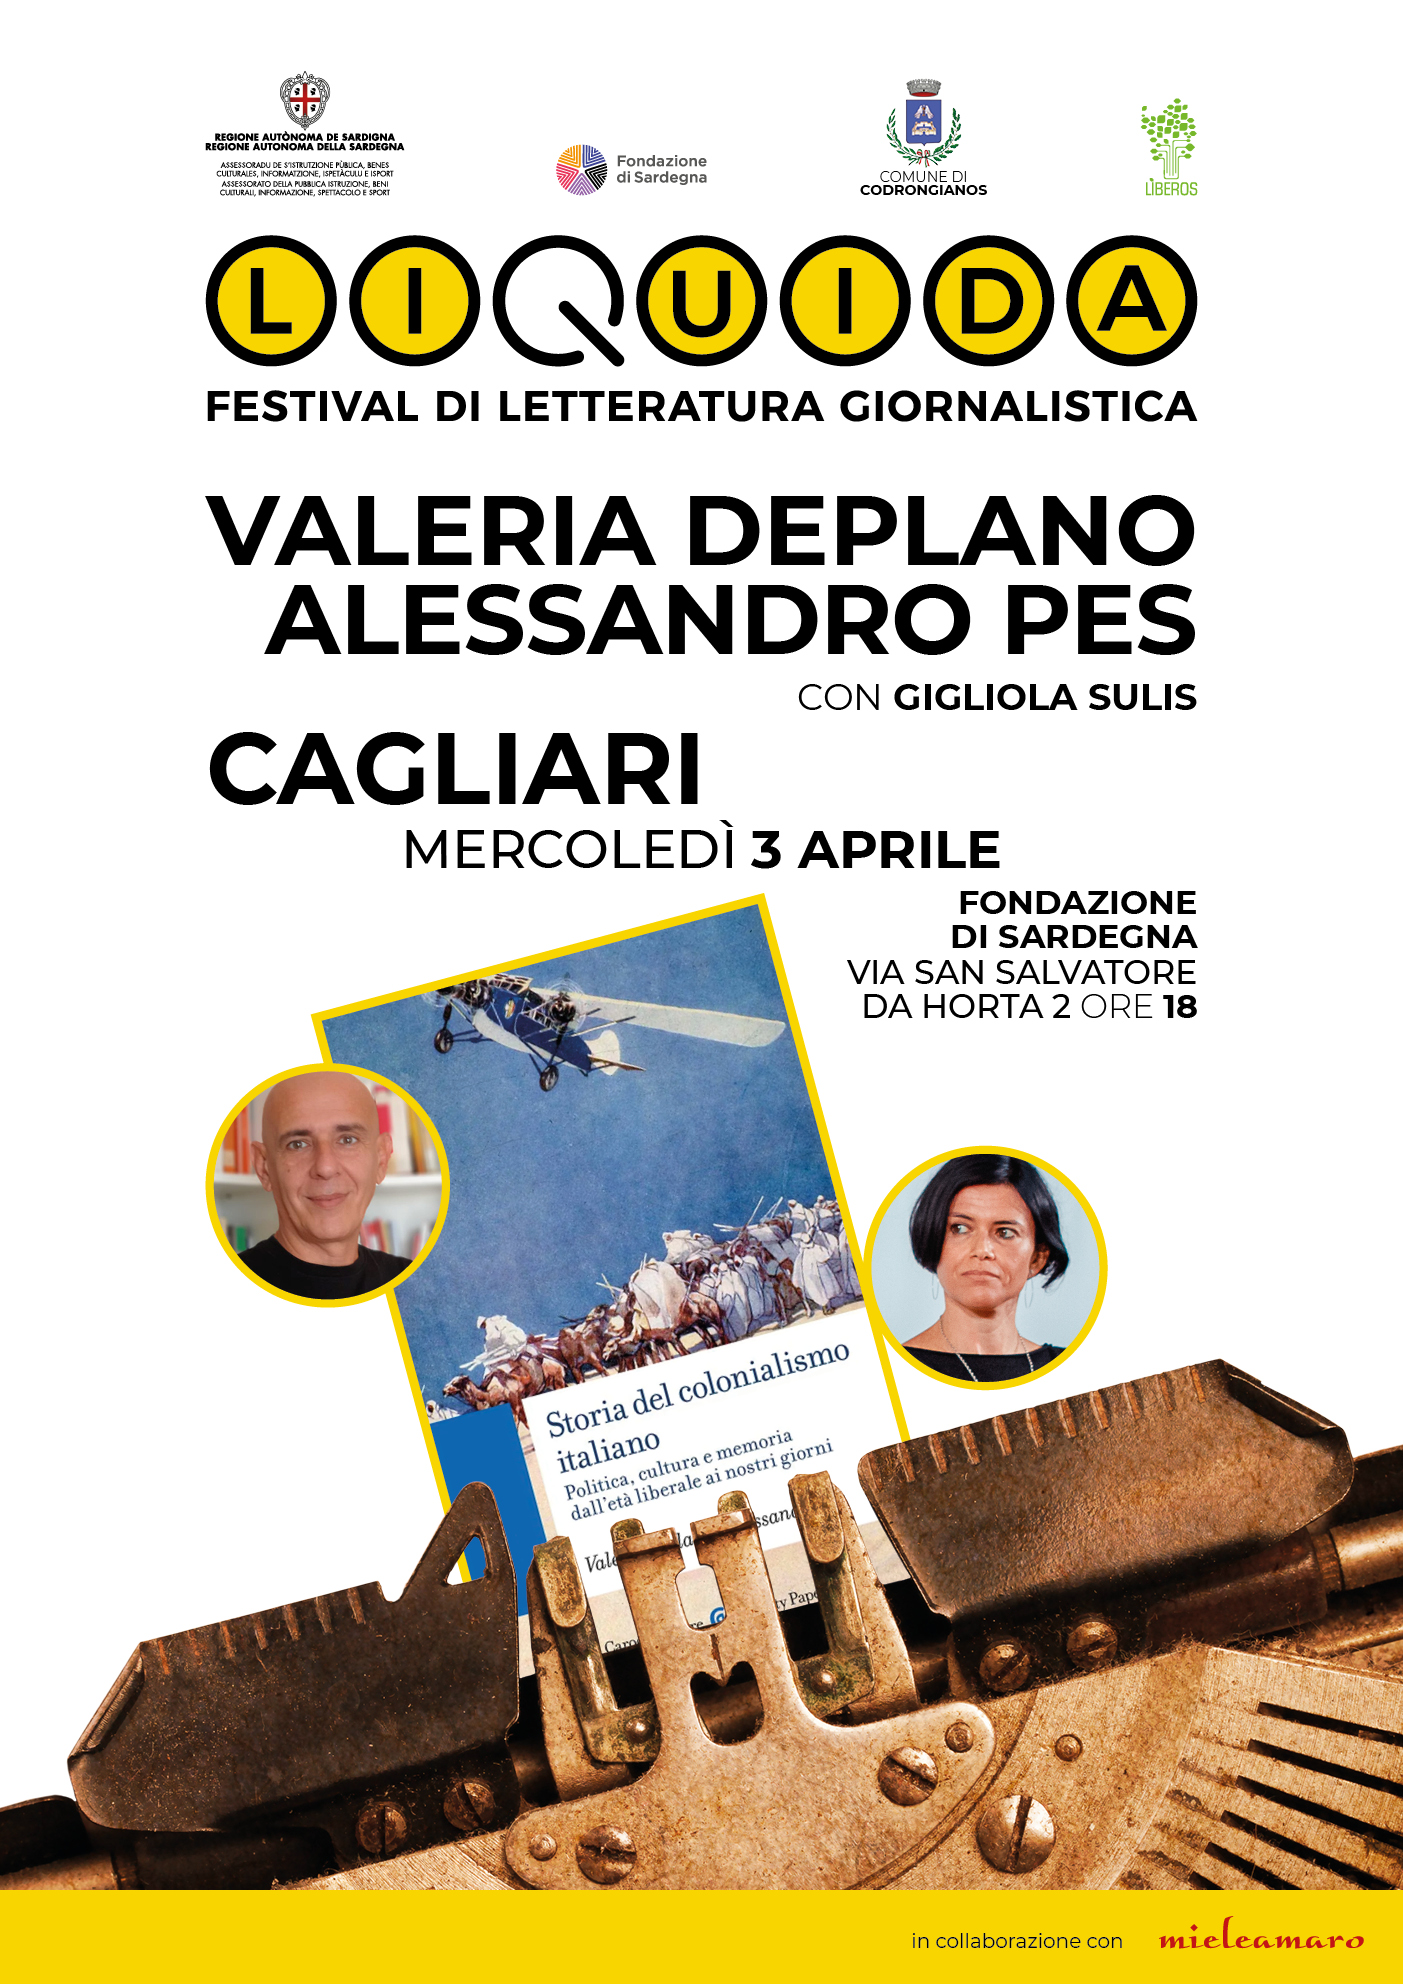 Festival Liquida: i professori Deplano e Pes presentano il loro libro “Storia del colonialismo italiano. Politica, cultura e memoria dall’età liberale ai nostri giorni”